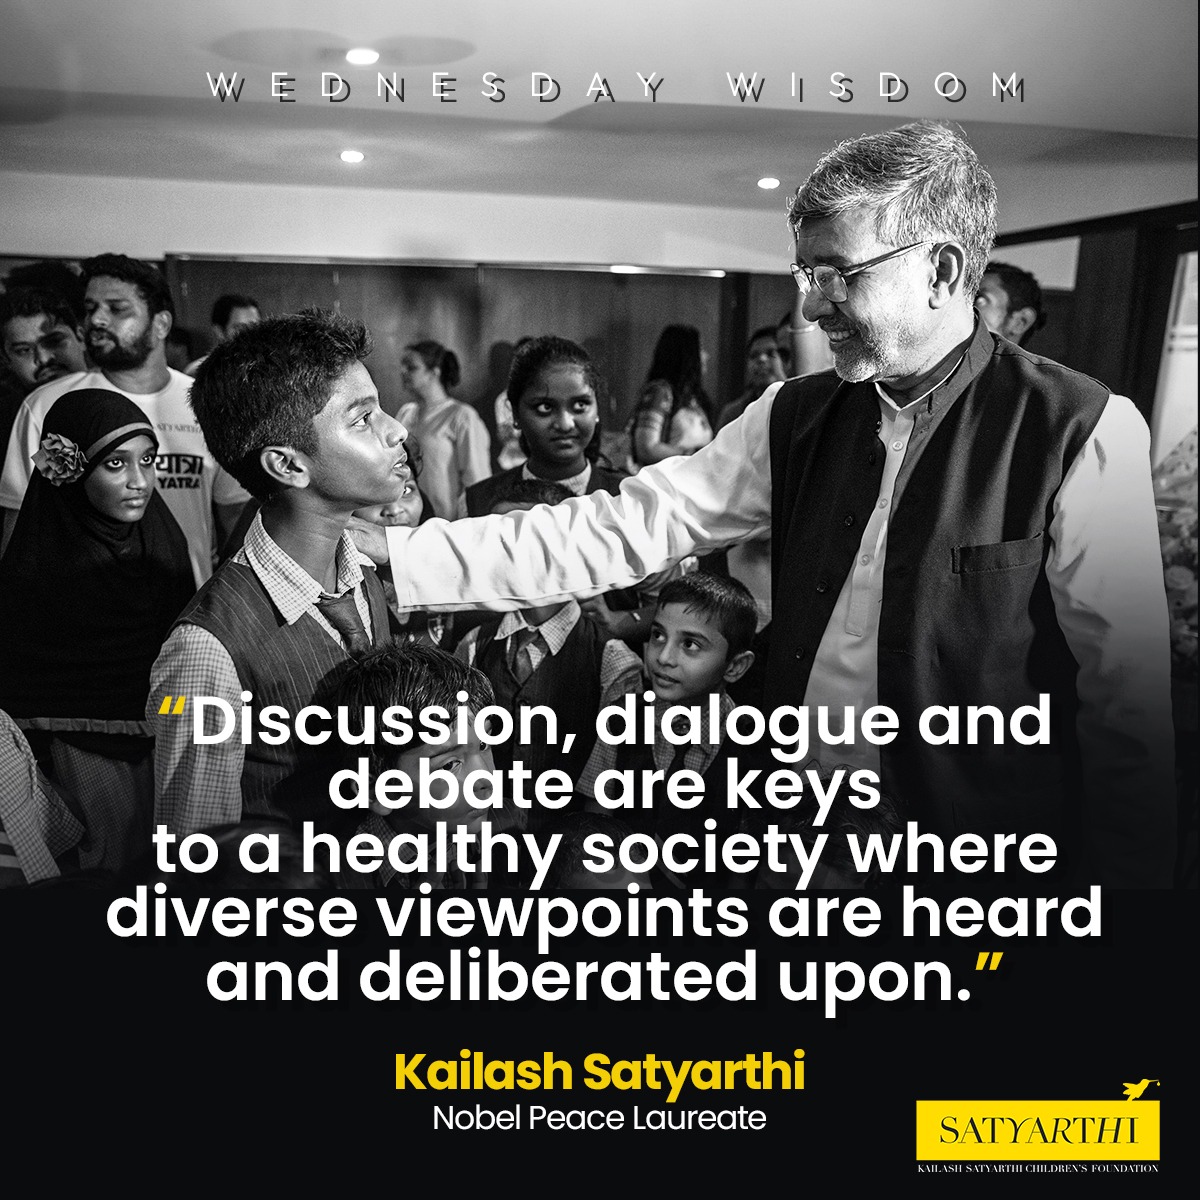 ✅💯
#KailashSatyarthi
#WednesdayWisdom
#kscf
#KailashSatyarthiChildrenFoundation